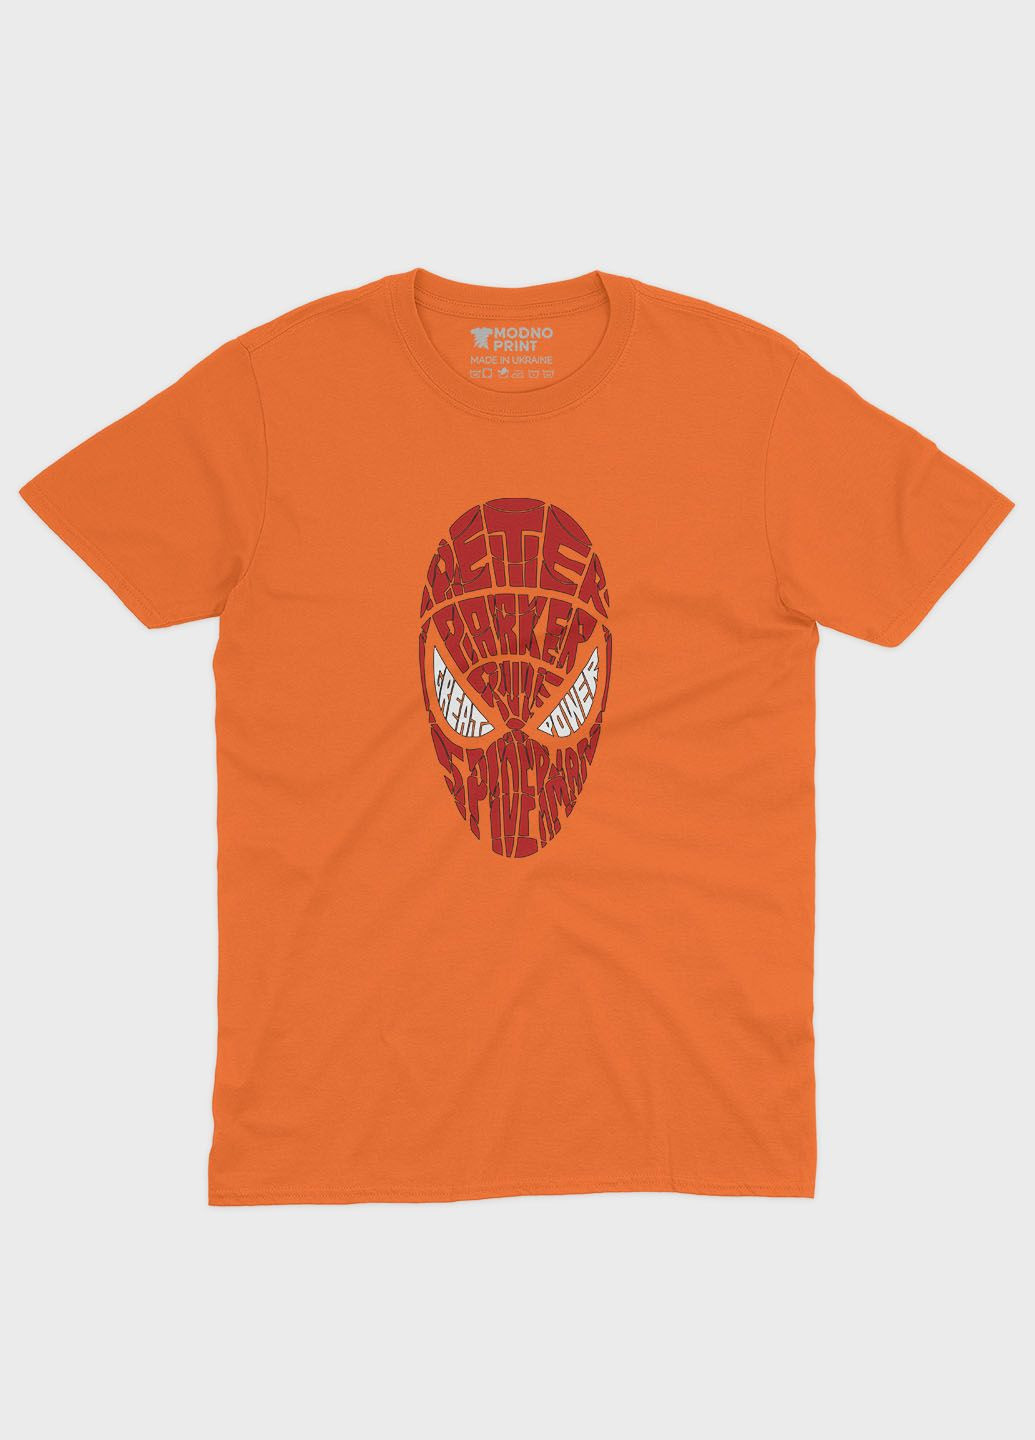 Помаранчева демісезонна футболка для хлопчика з принтом супергероя - людина-павук (ts001-1-ora-006-014-073-b) Modno